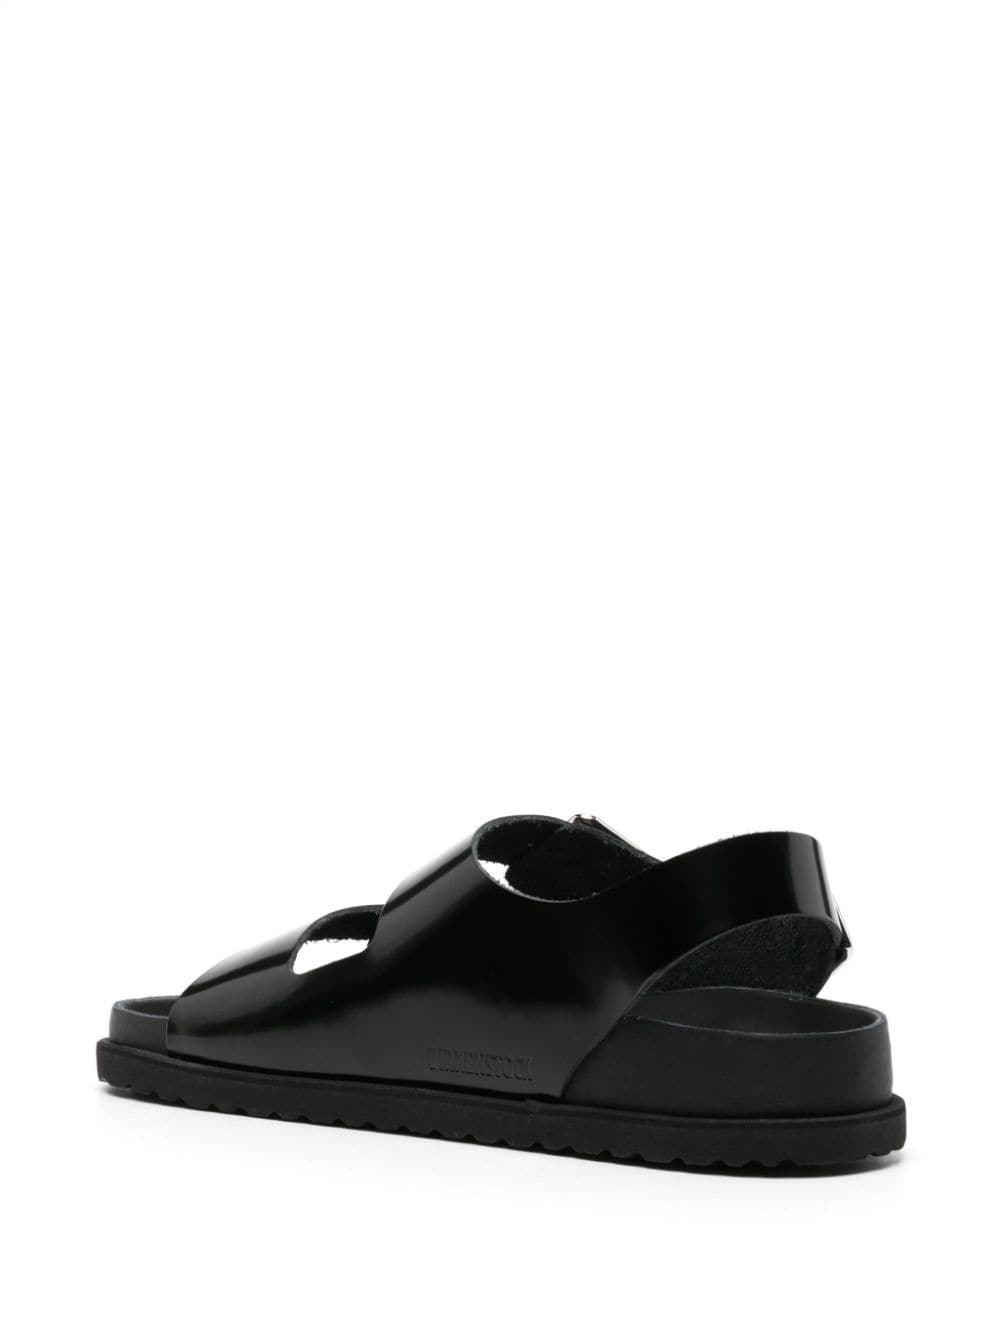 Milano Avantgarde leather sandals<BR/><BR/><BR/>